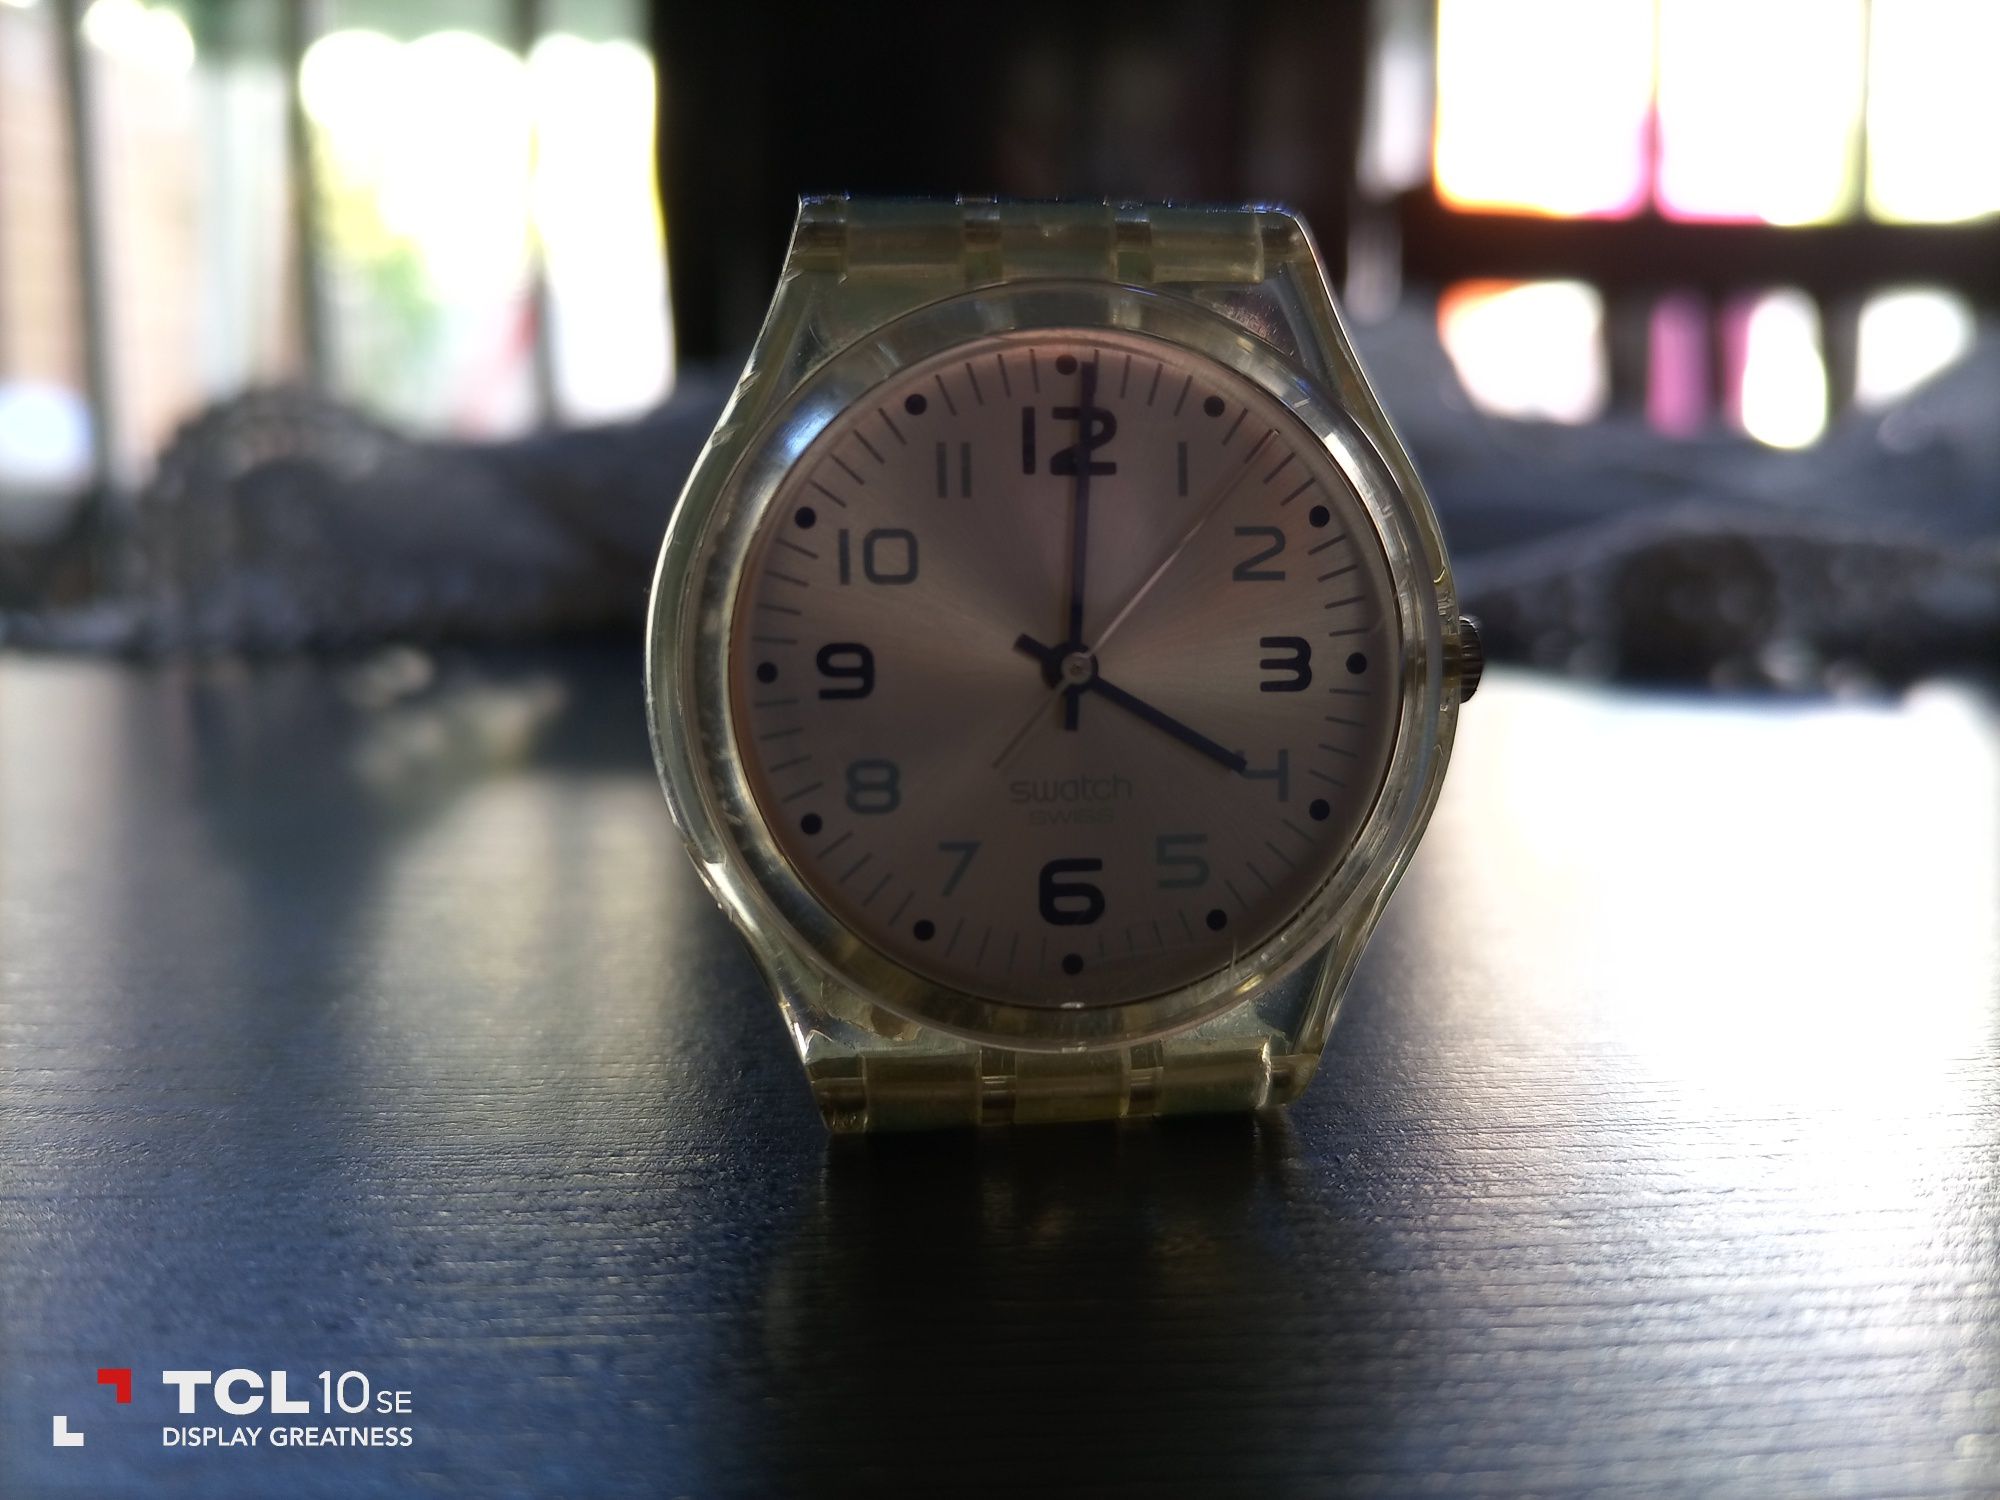 Relógio Swatch Swiss